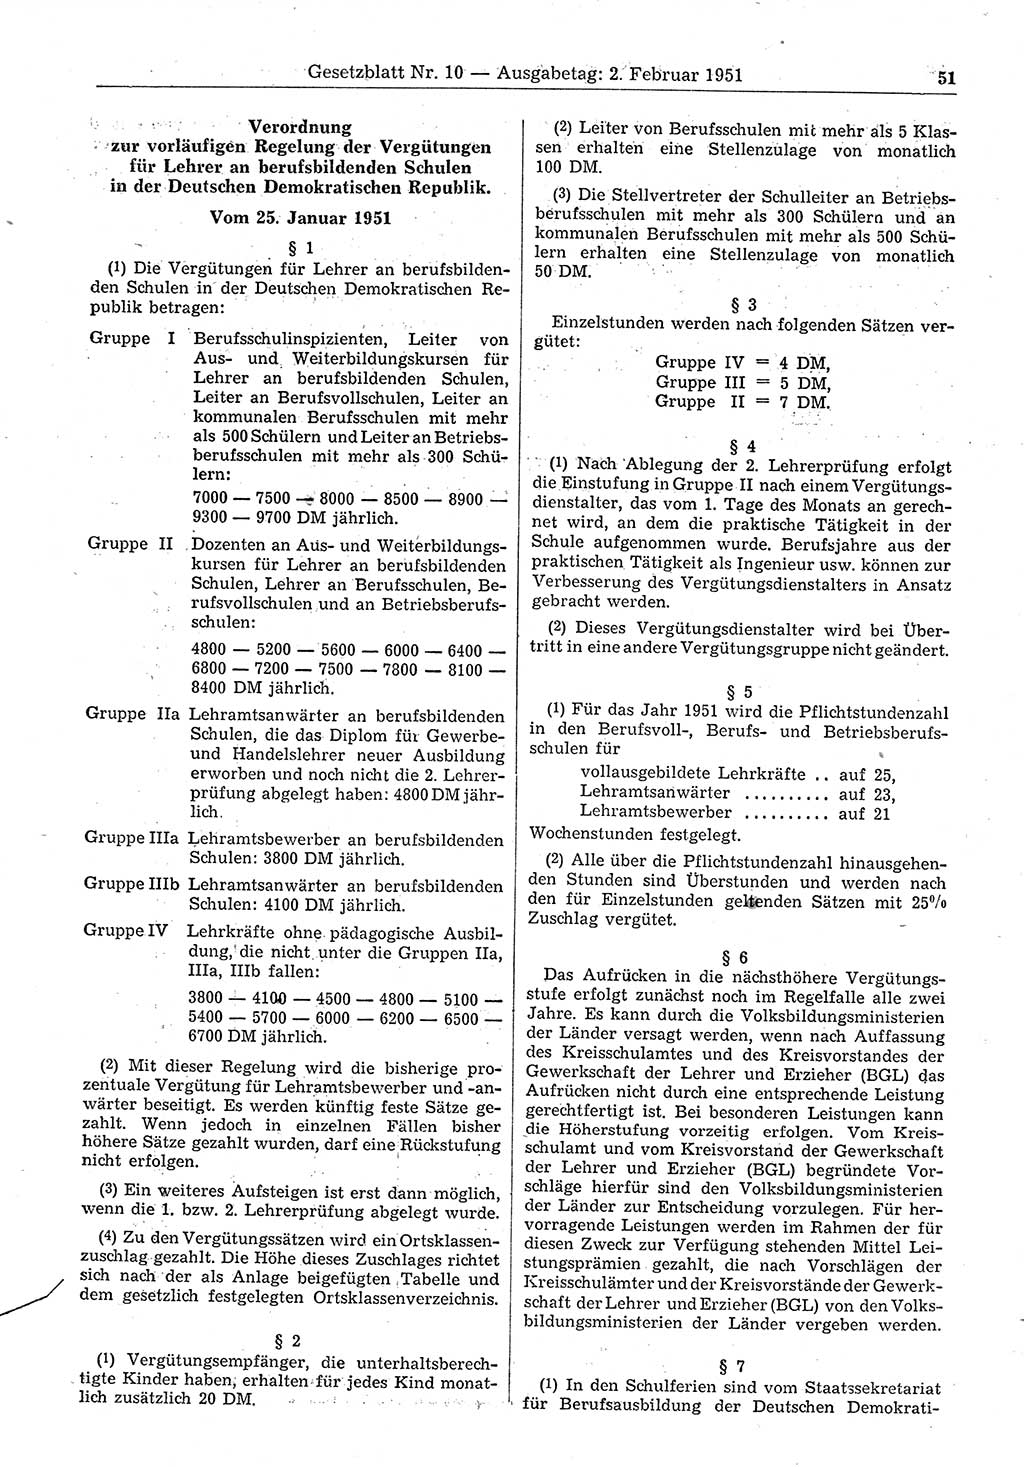 Gesetzblatt (GBl.) der Deutschen Demokratischen Republik (DDR) 1951, Seite 51 (GBl. DDR 1951, S. 51)